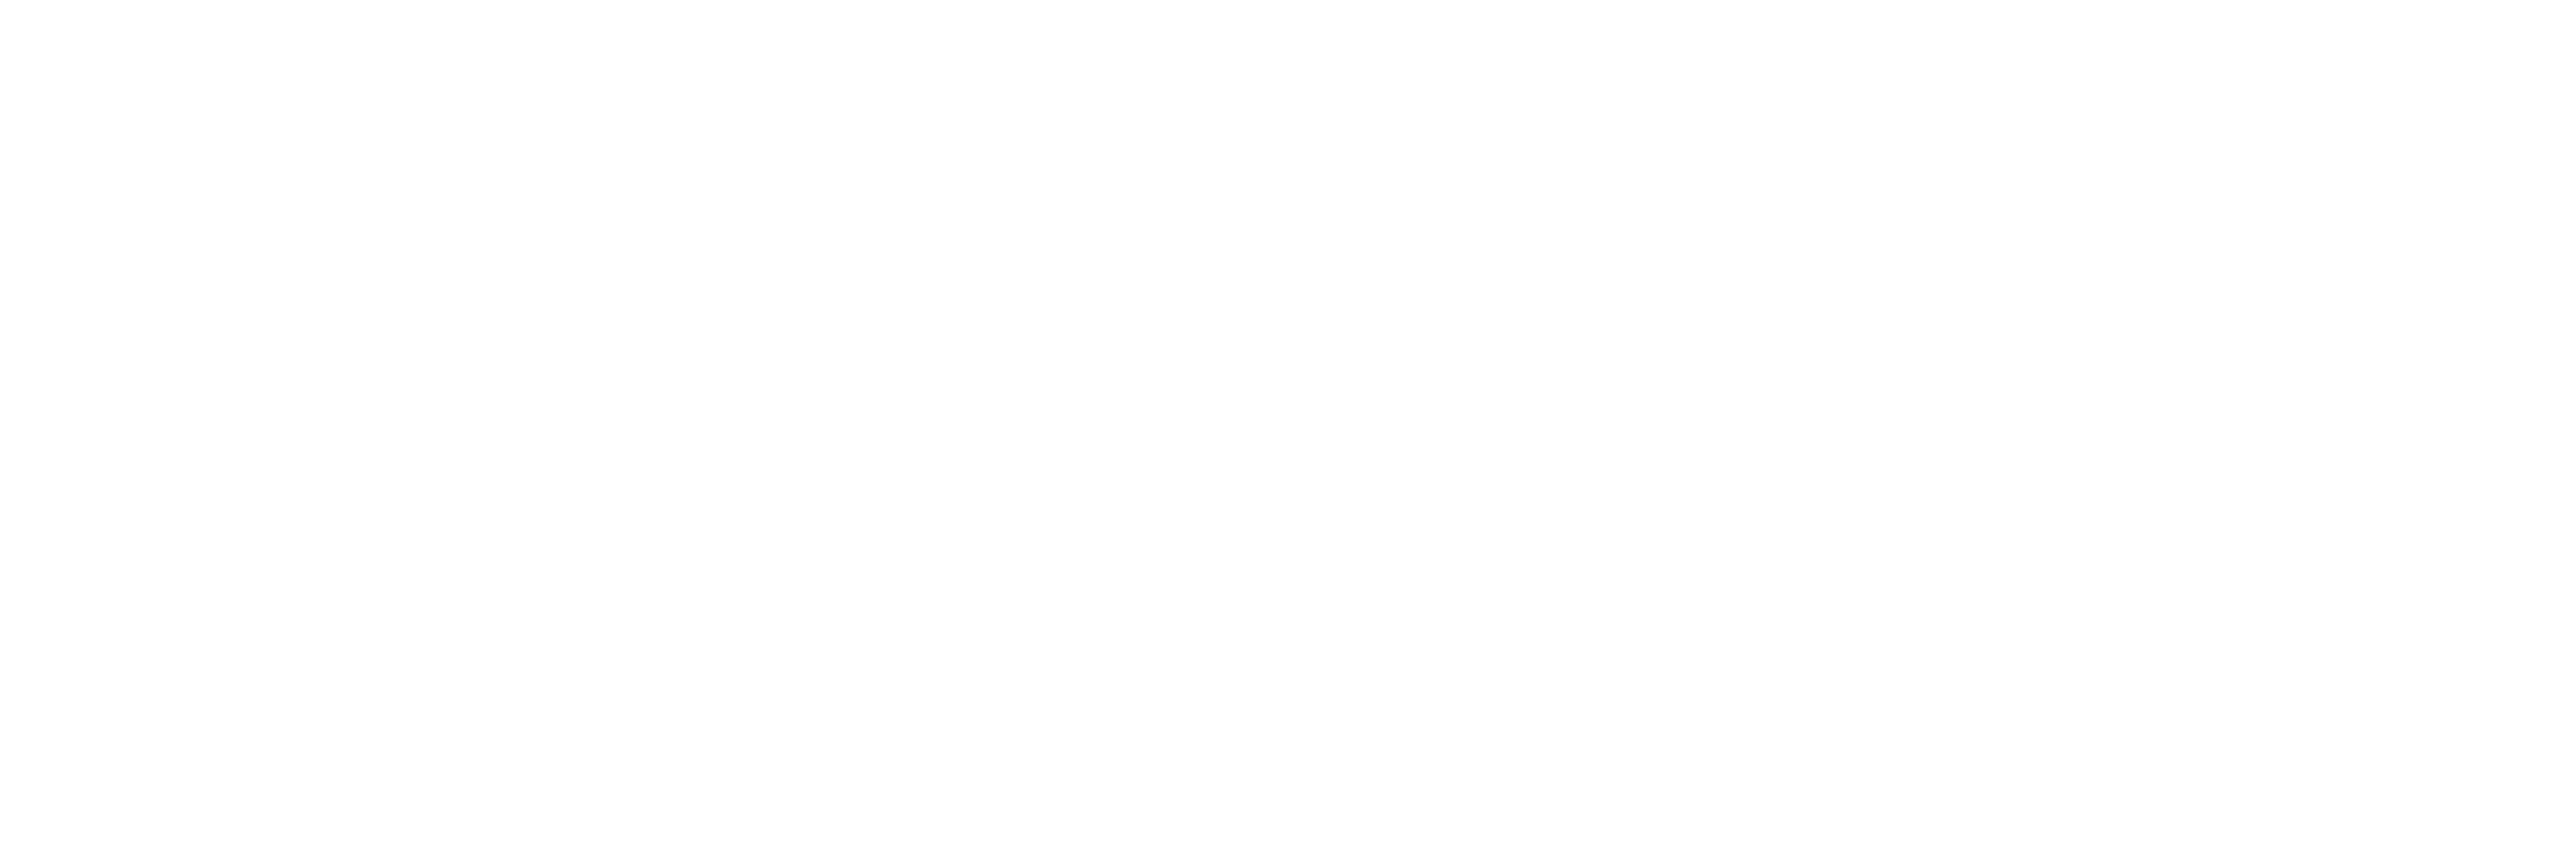 Auburn University vertical wordmark logo